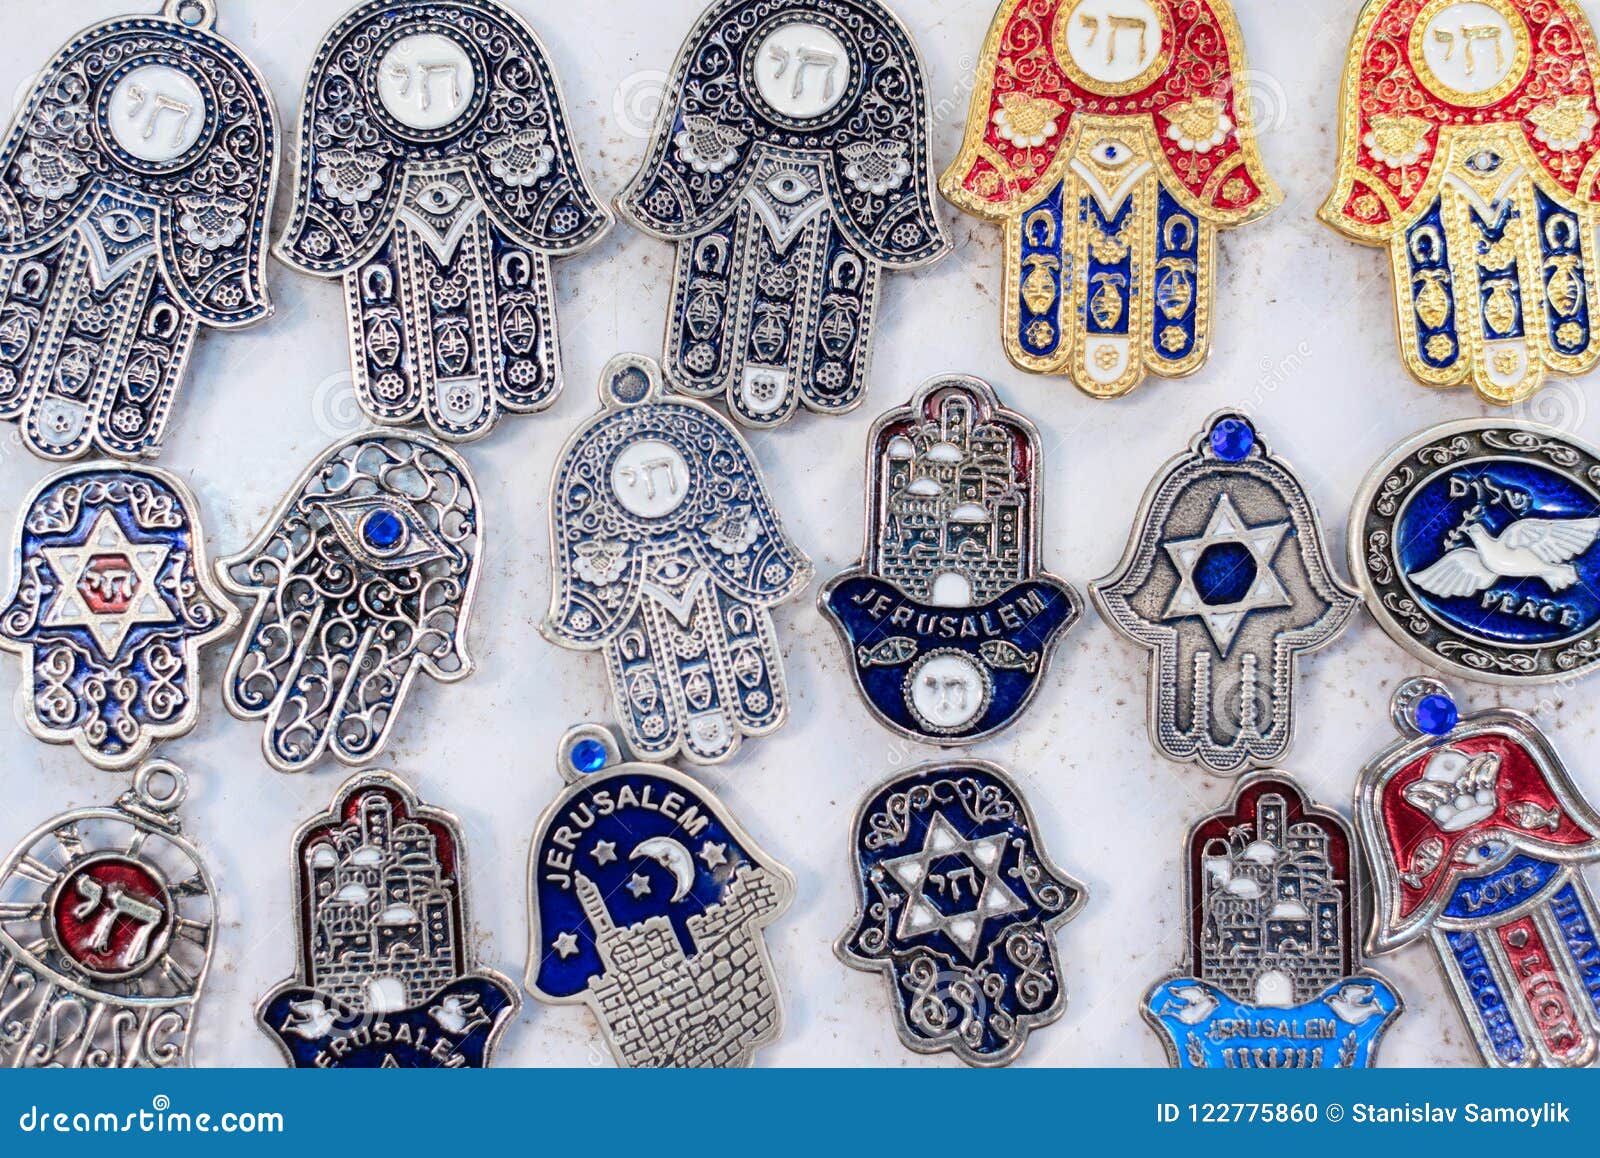 Souvenirs at Jerusalem Bazaar, Hamsa or Khamsa Symbol of Judaism, the ...